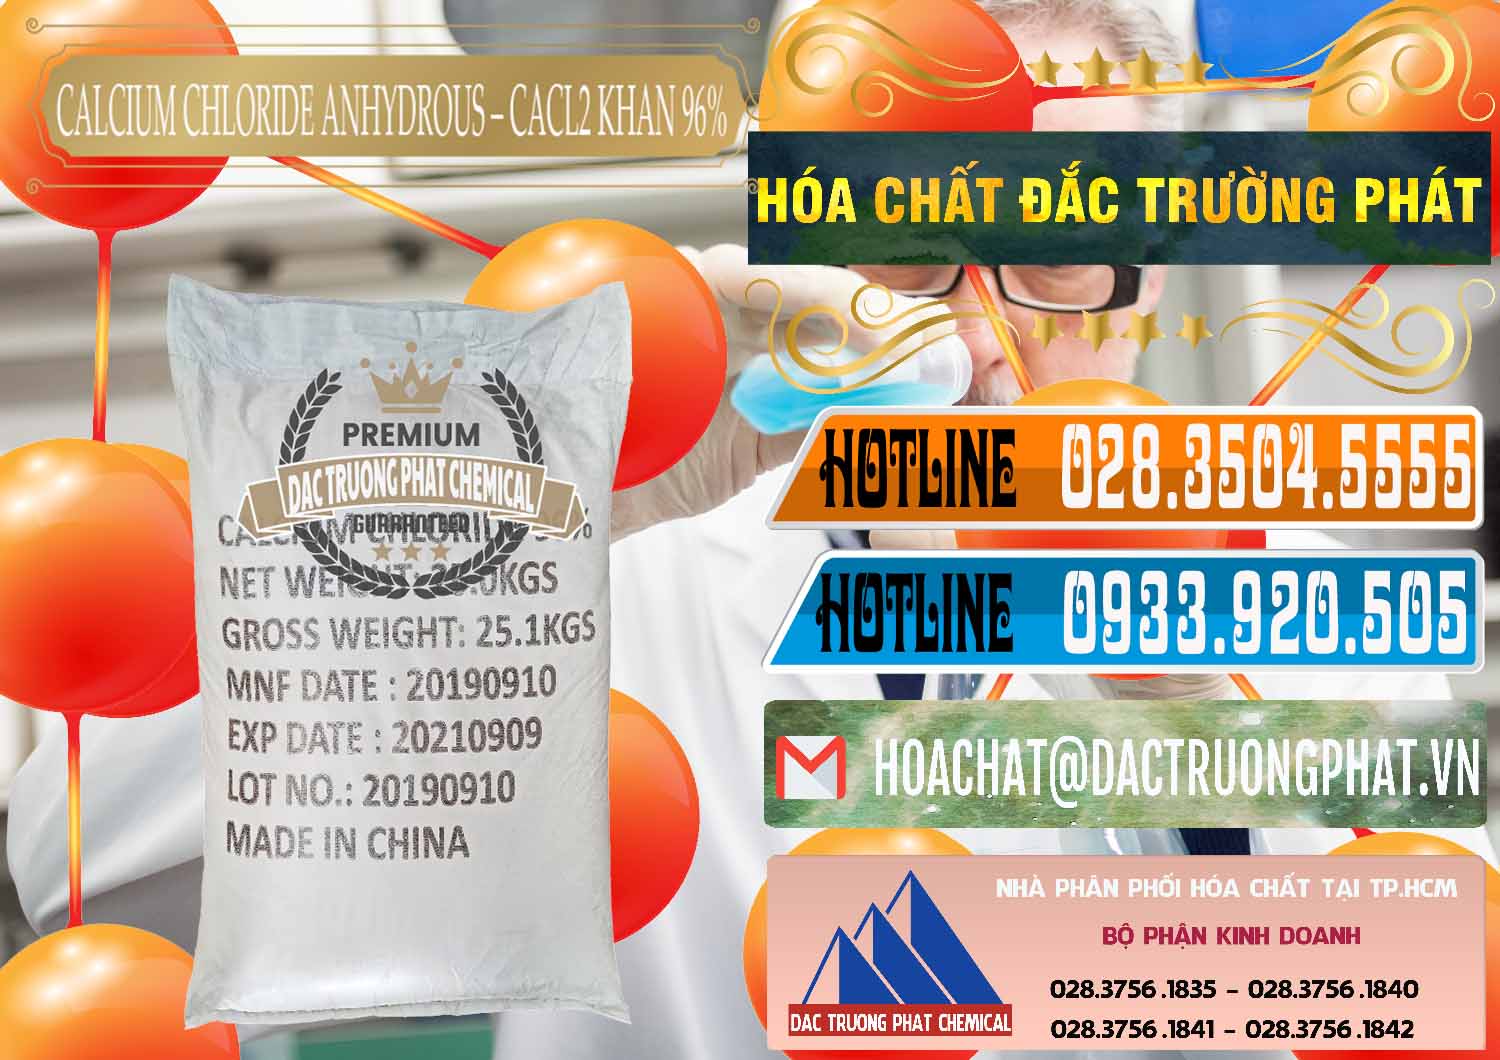 Cty bán và phân phối CaCl2 – Canxi Clorua Anhydrous Khan 96% Trung Quốc China - 0043 - Đơn vị cung cấp ( kinh doanh ) hóa chất tại TP.HCM - stmp.net